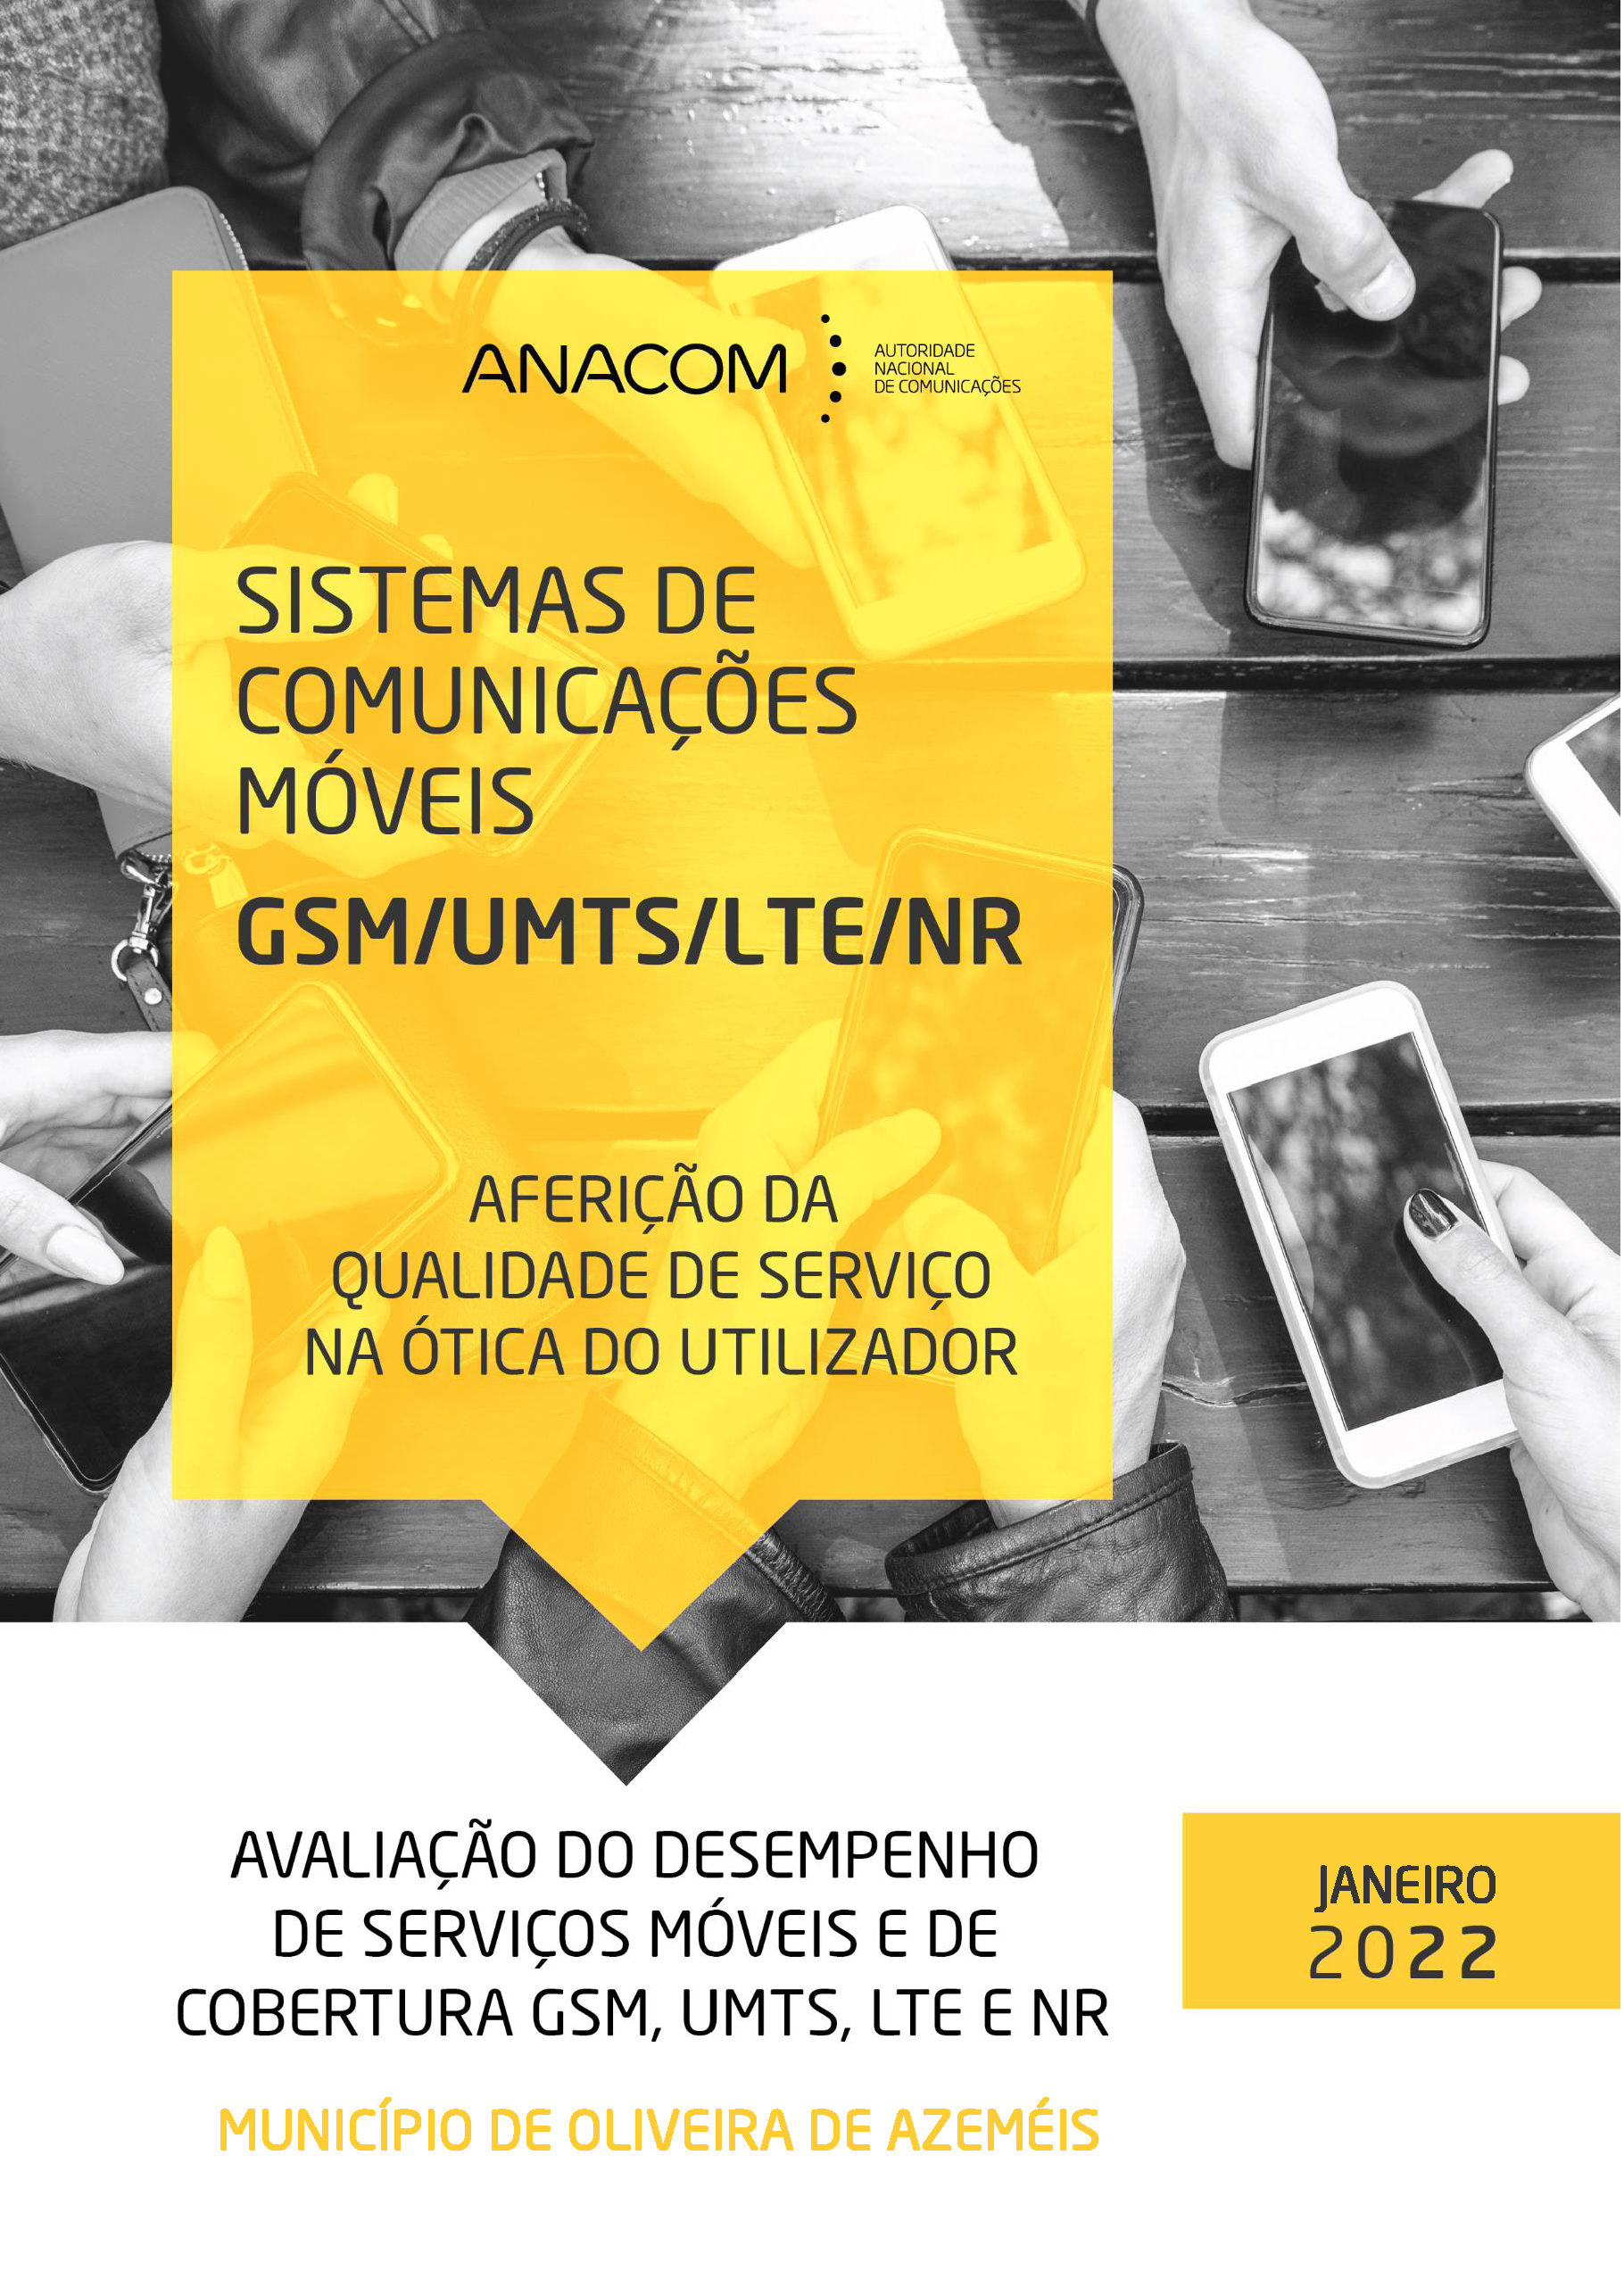 Avaliação do desempenho de serviços móveis e de cobertura GSM, UMTS, LTE e NR no Município de Oliveira de Azeméis